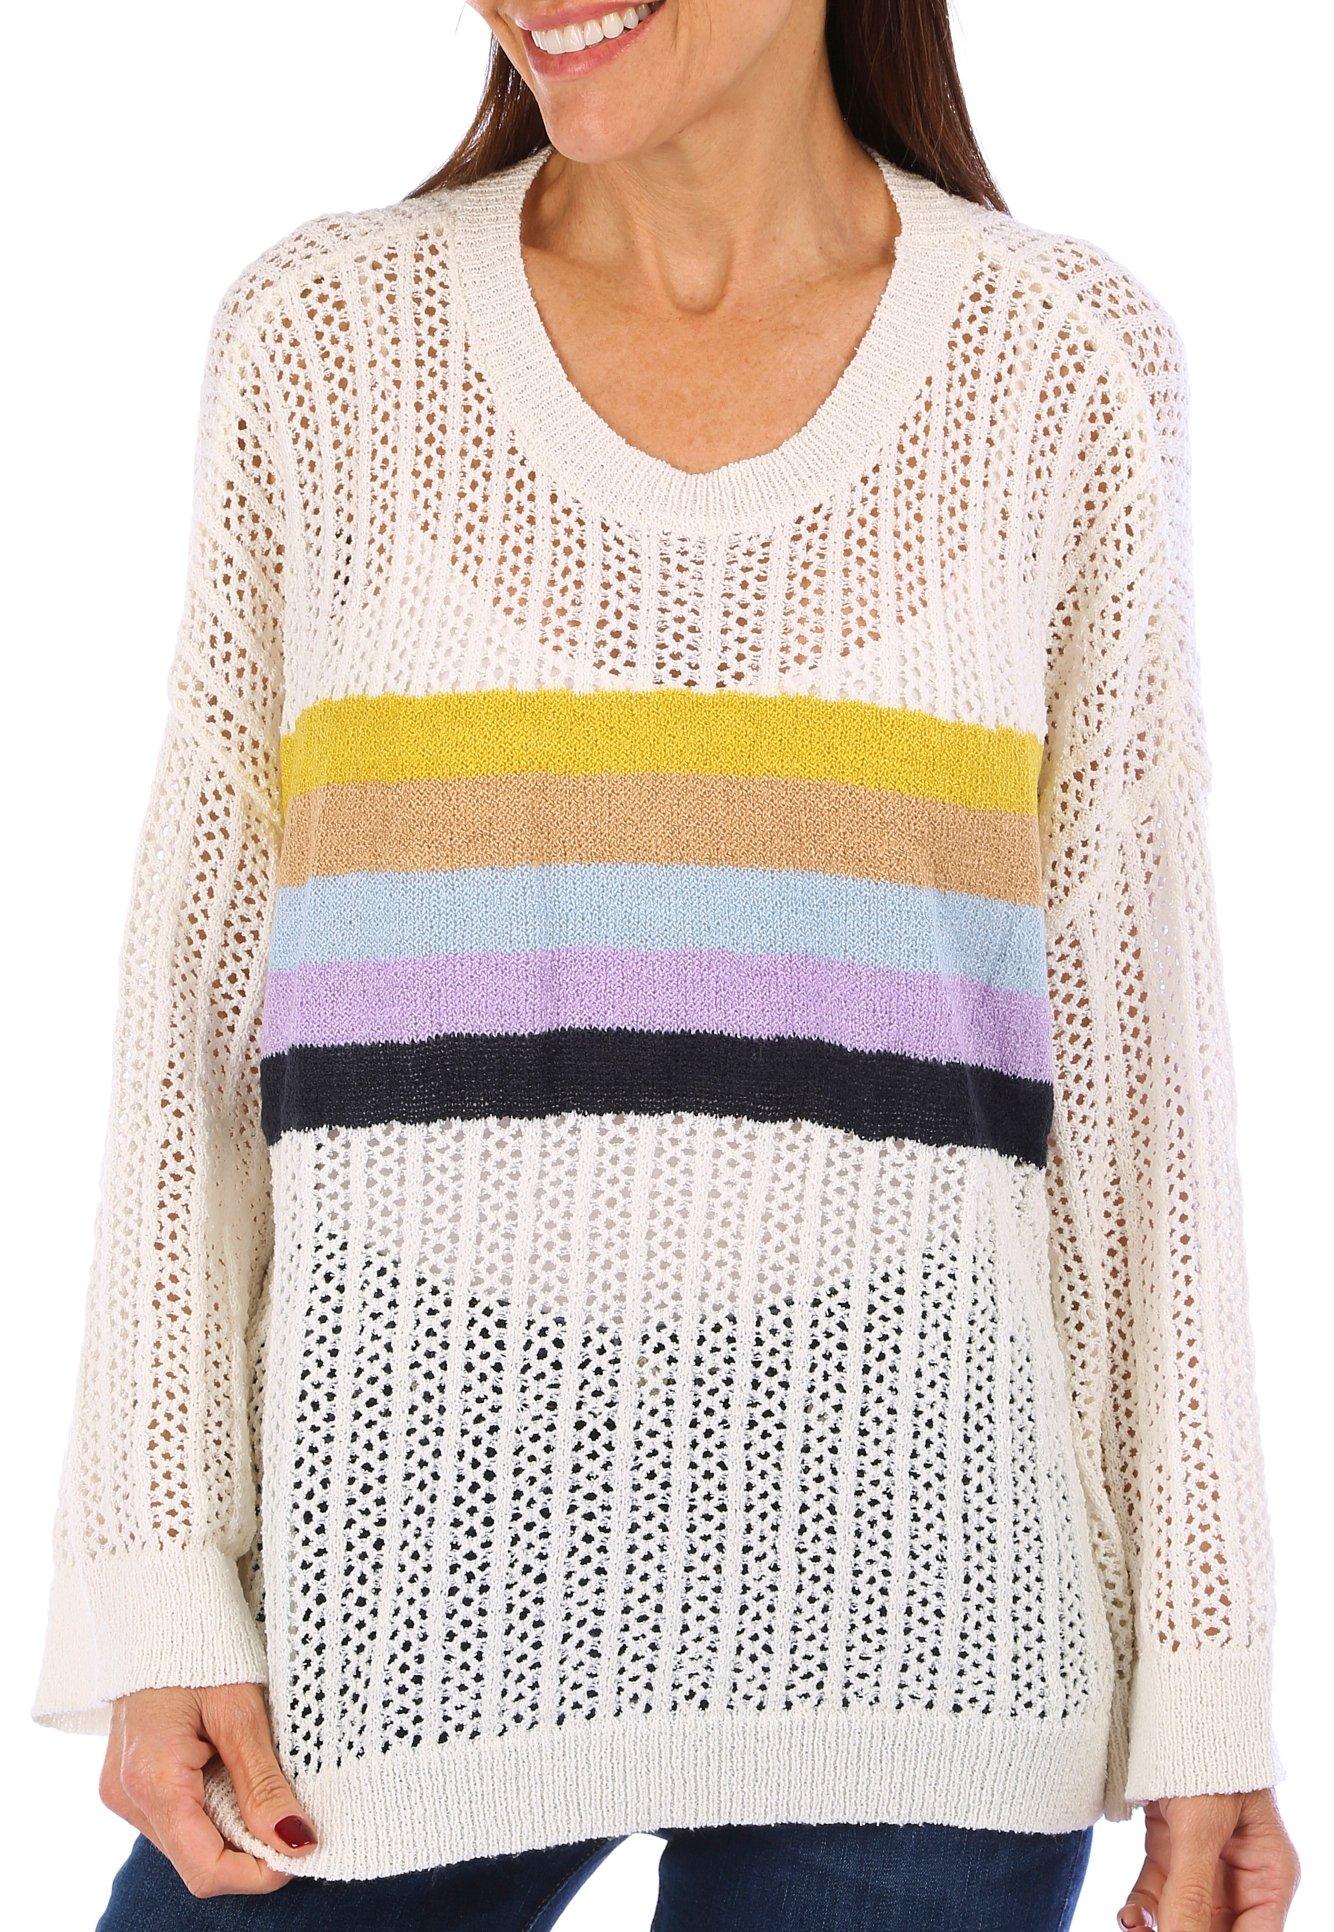 Womens Open Wave Stripe Fashion Sweater